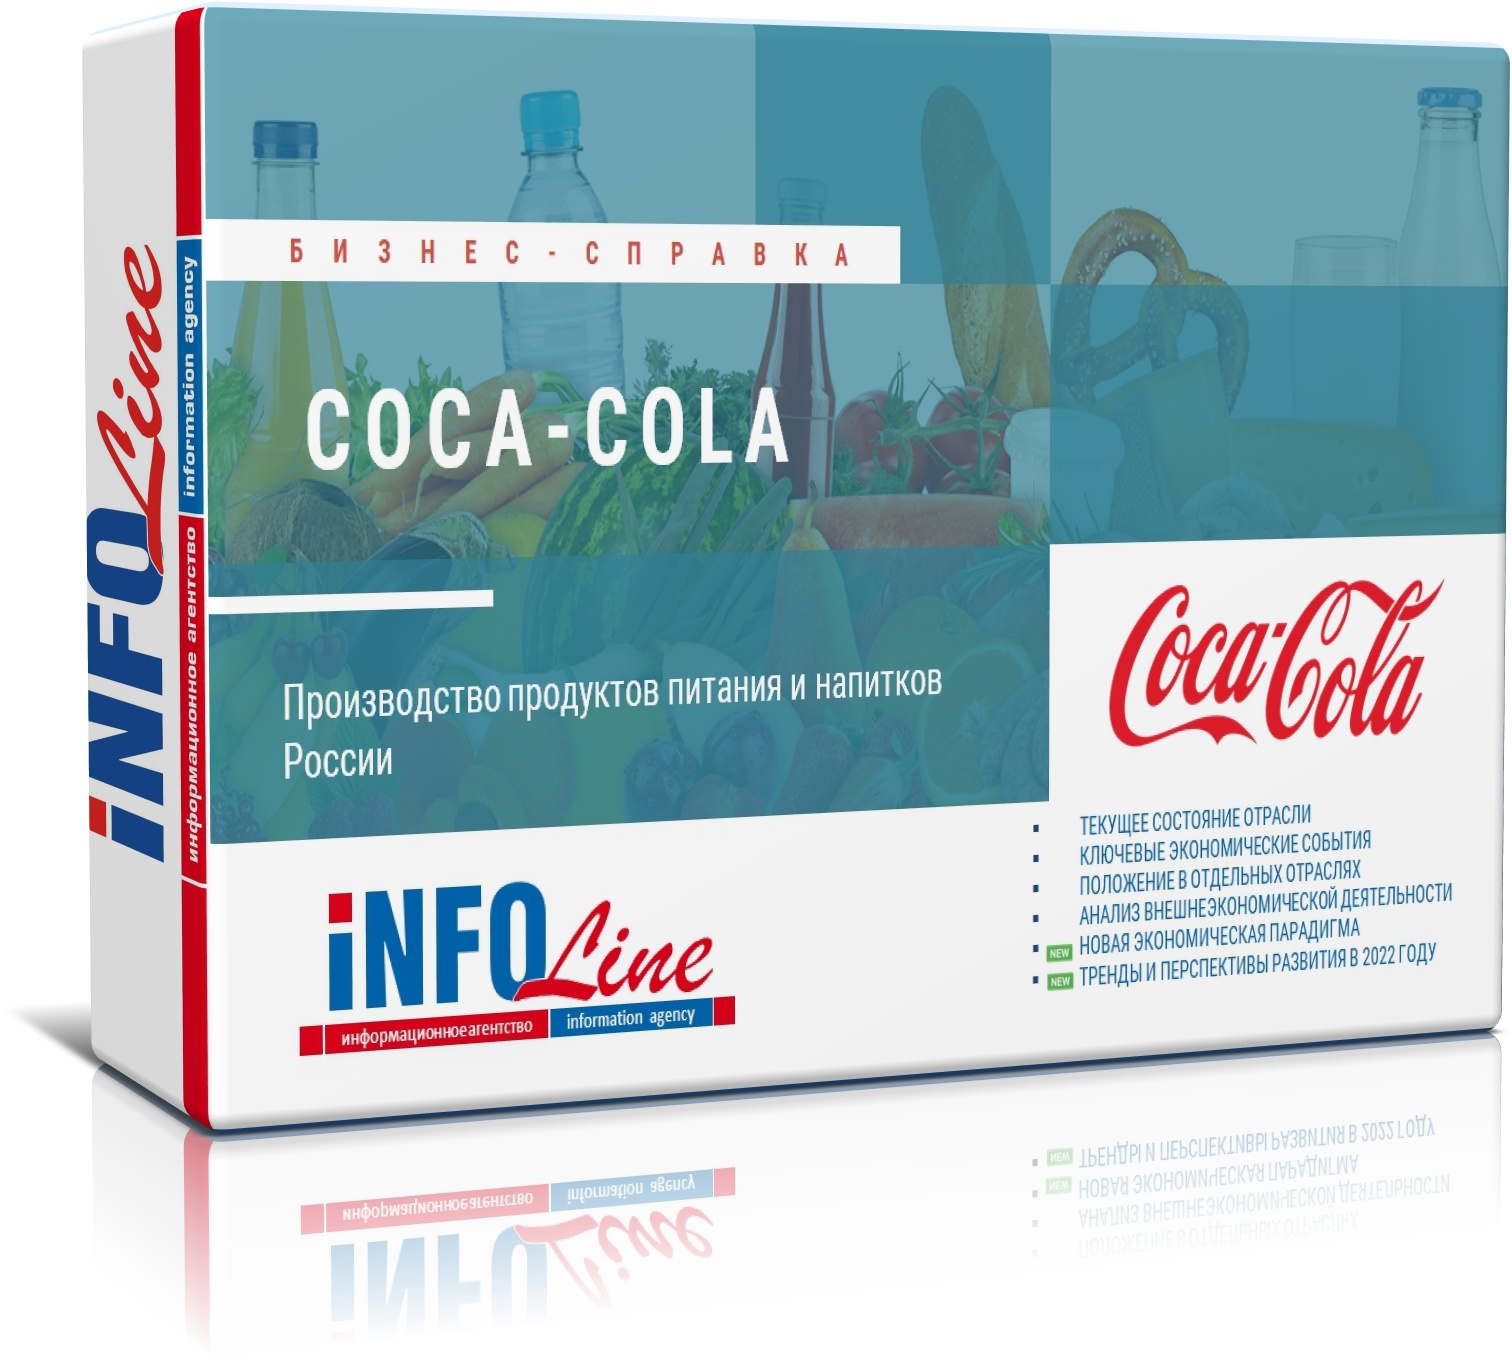 Бизнес-справка по компании "Сoca-Cola"